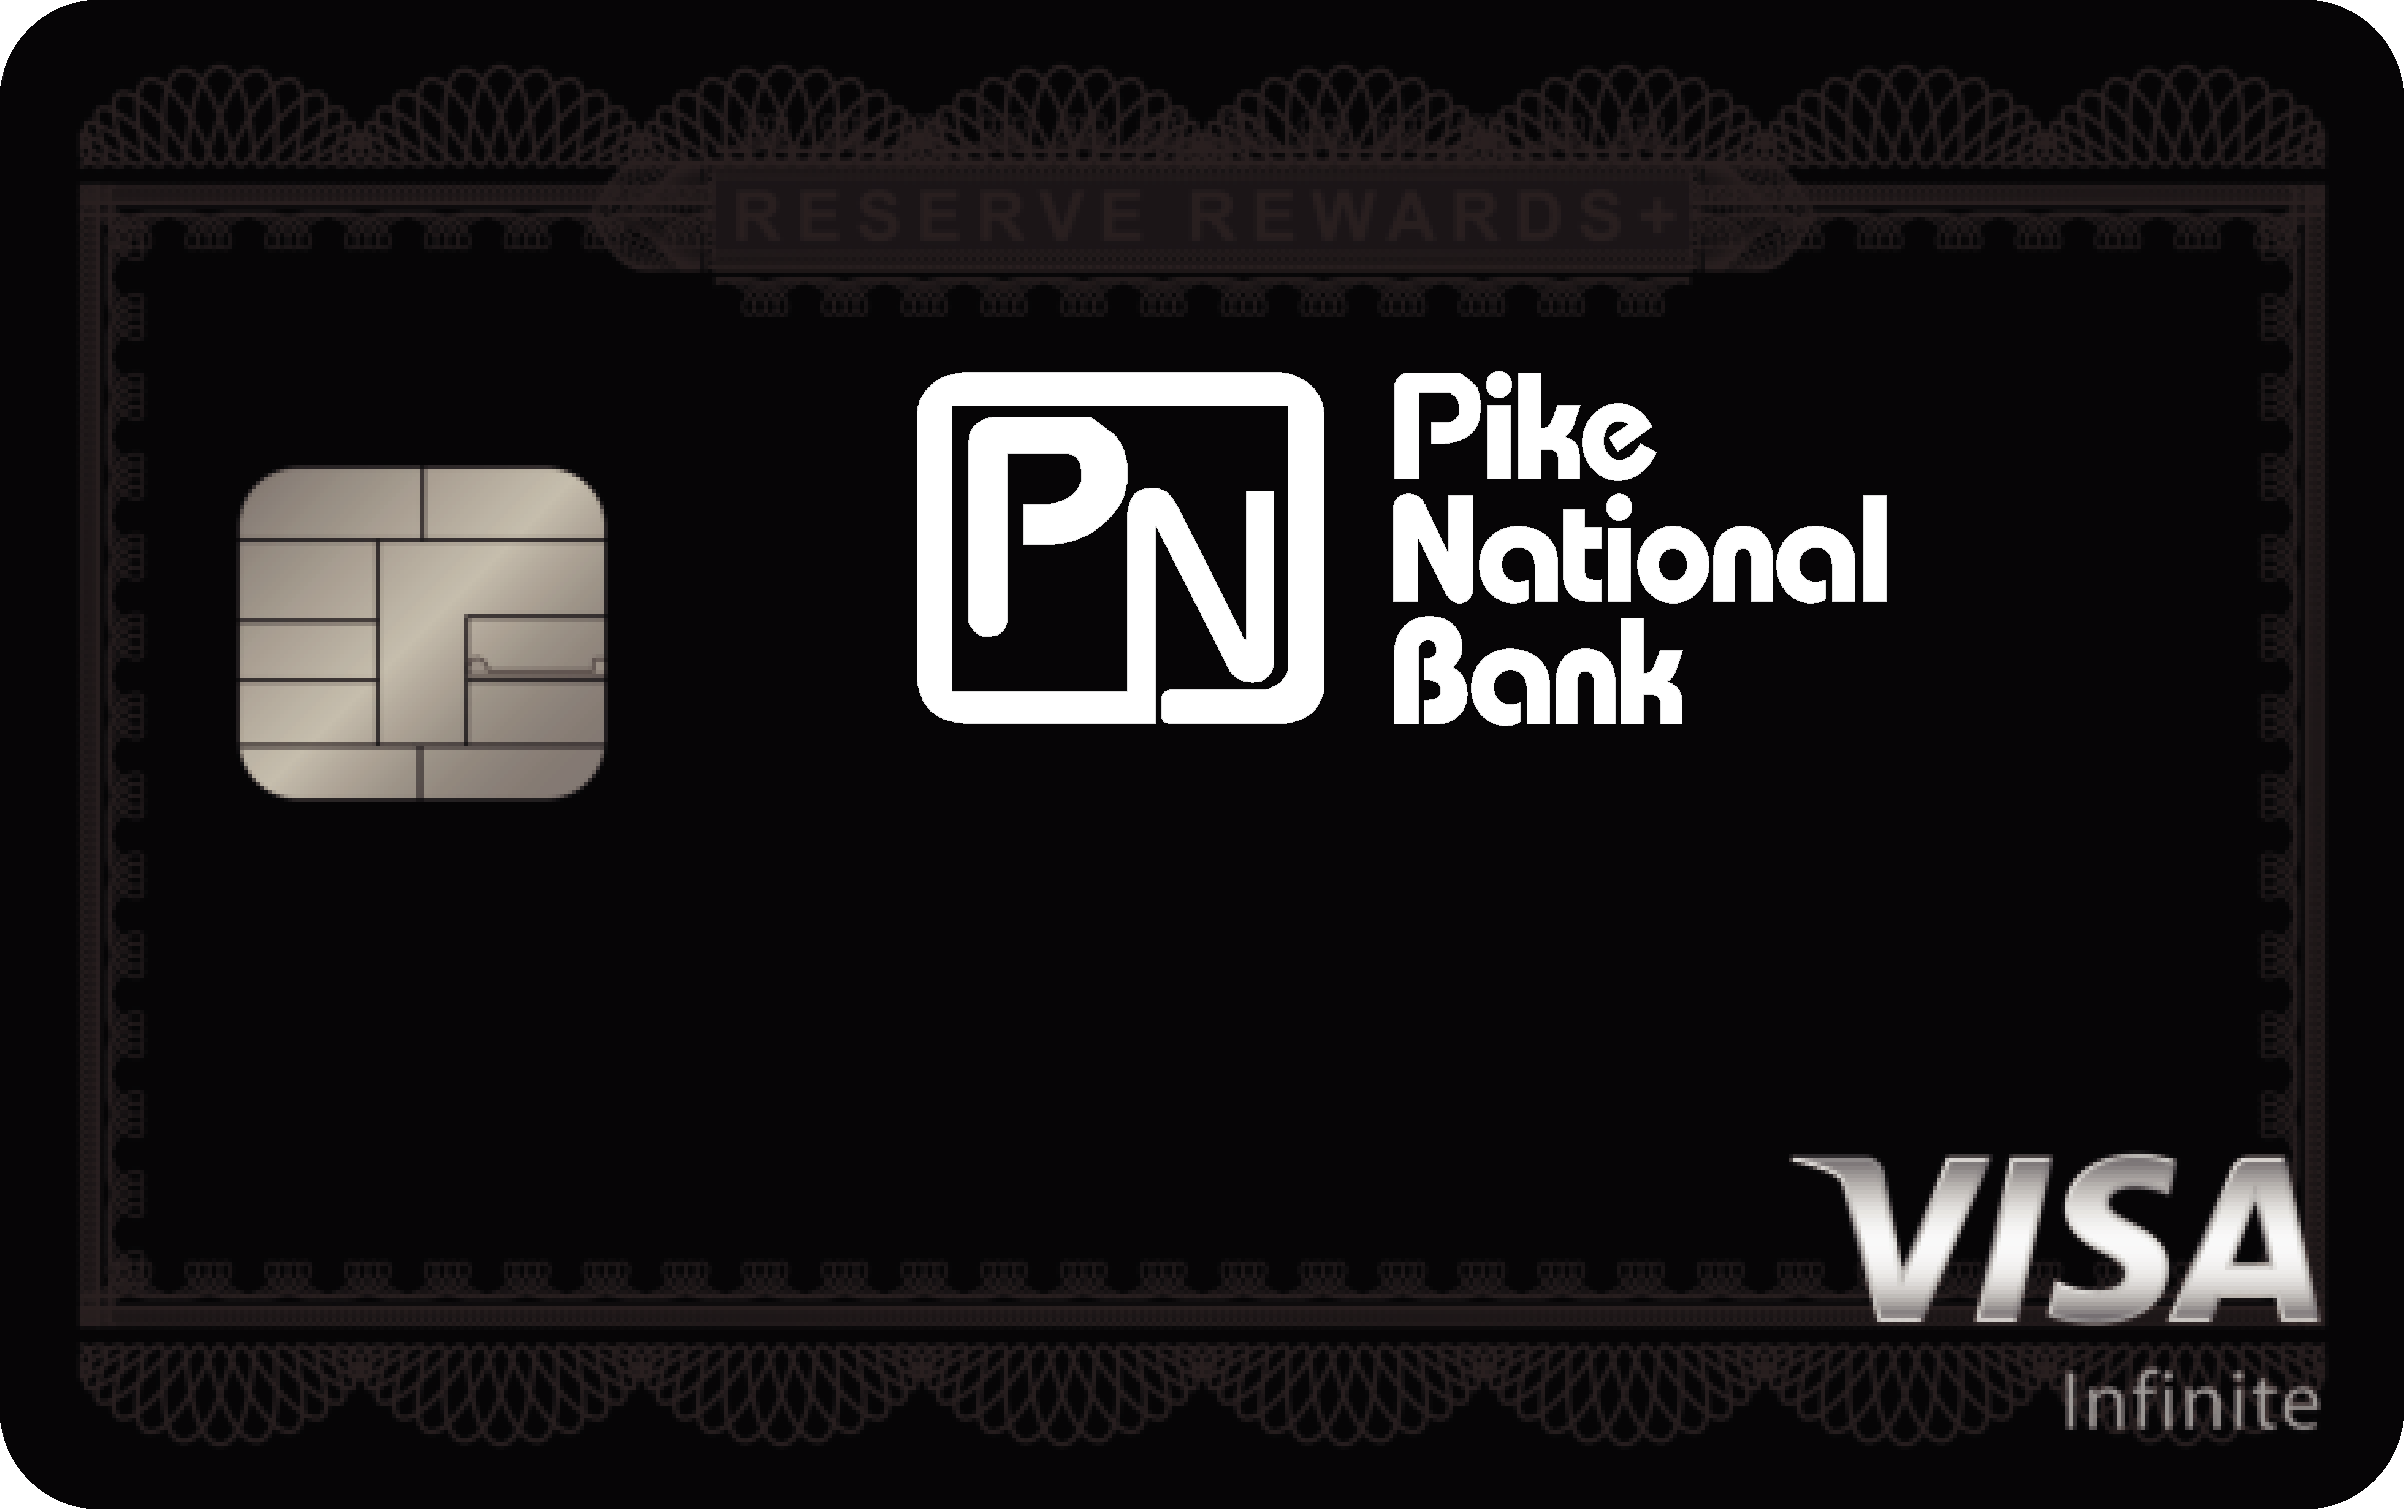 Pike National Bank